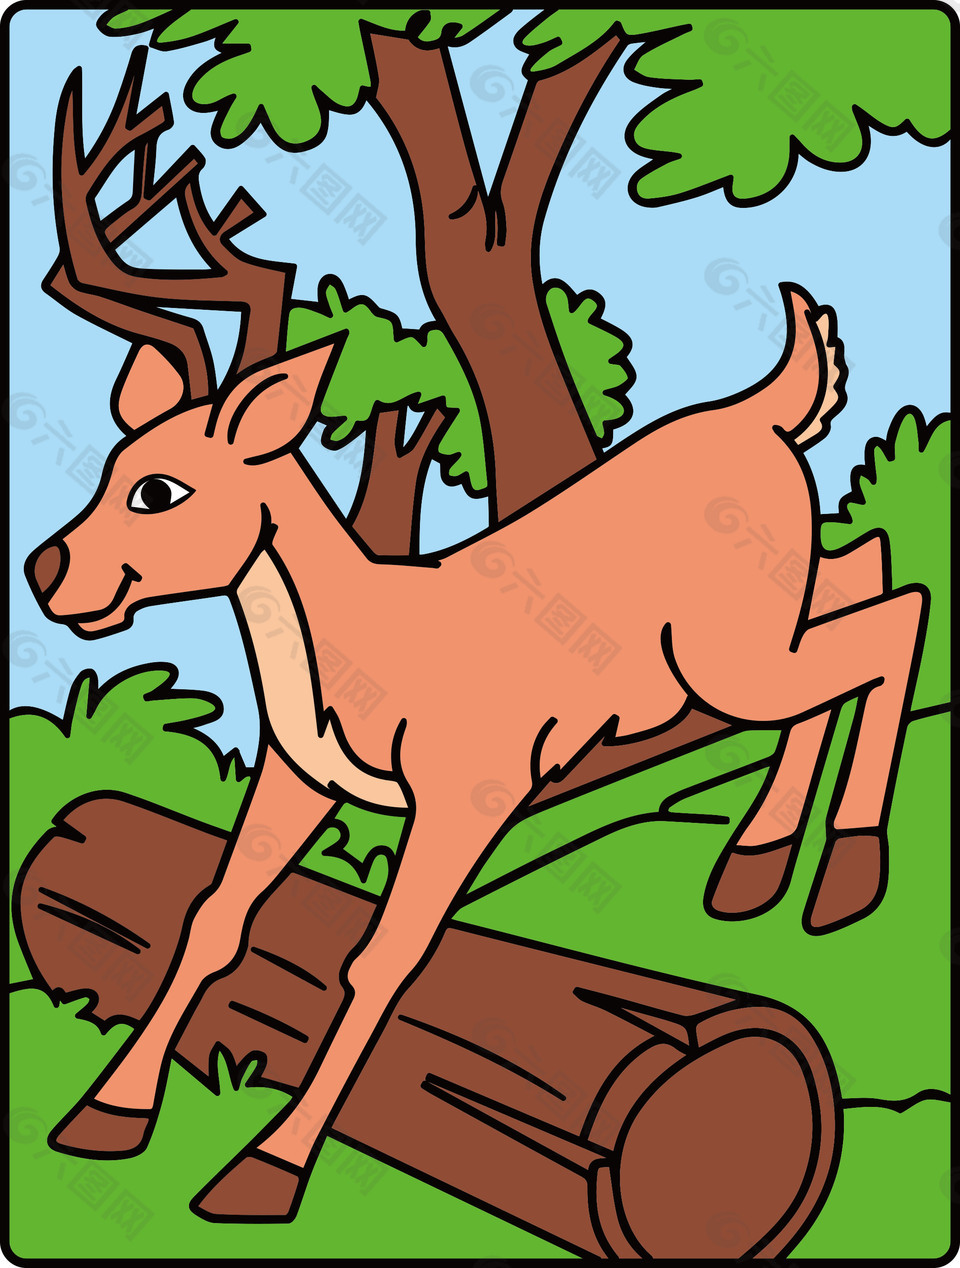 彩色可爱卡通矢量素材鹿